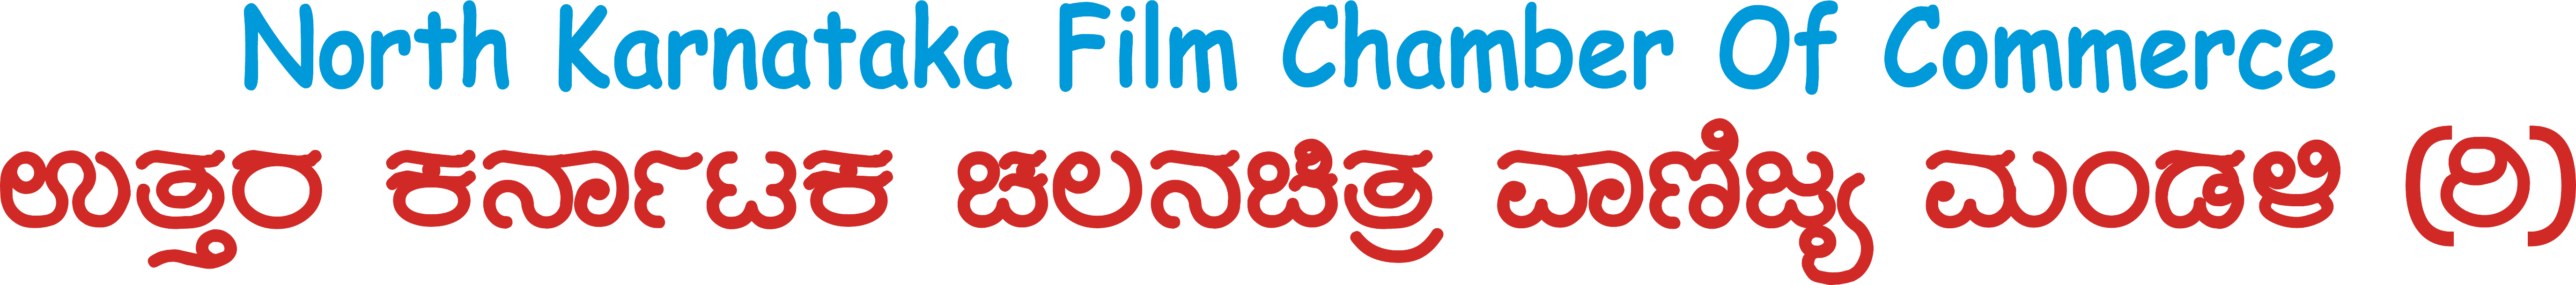 North Karnataka Film Chamber of Commerce